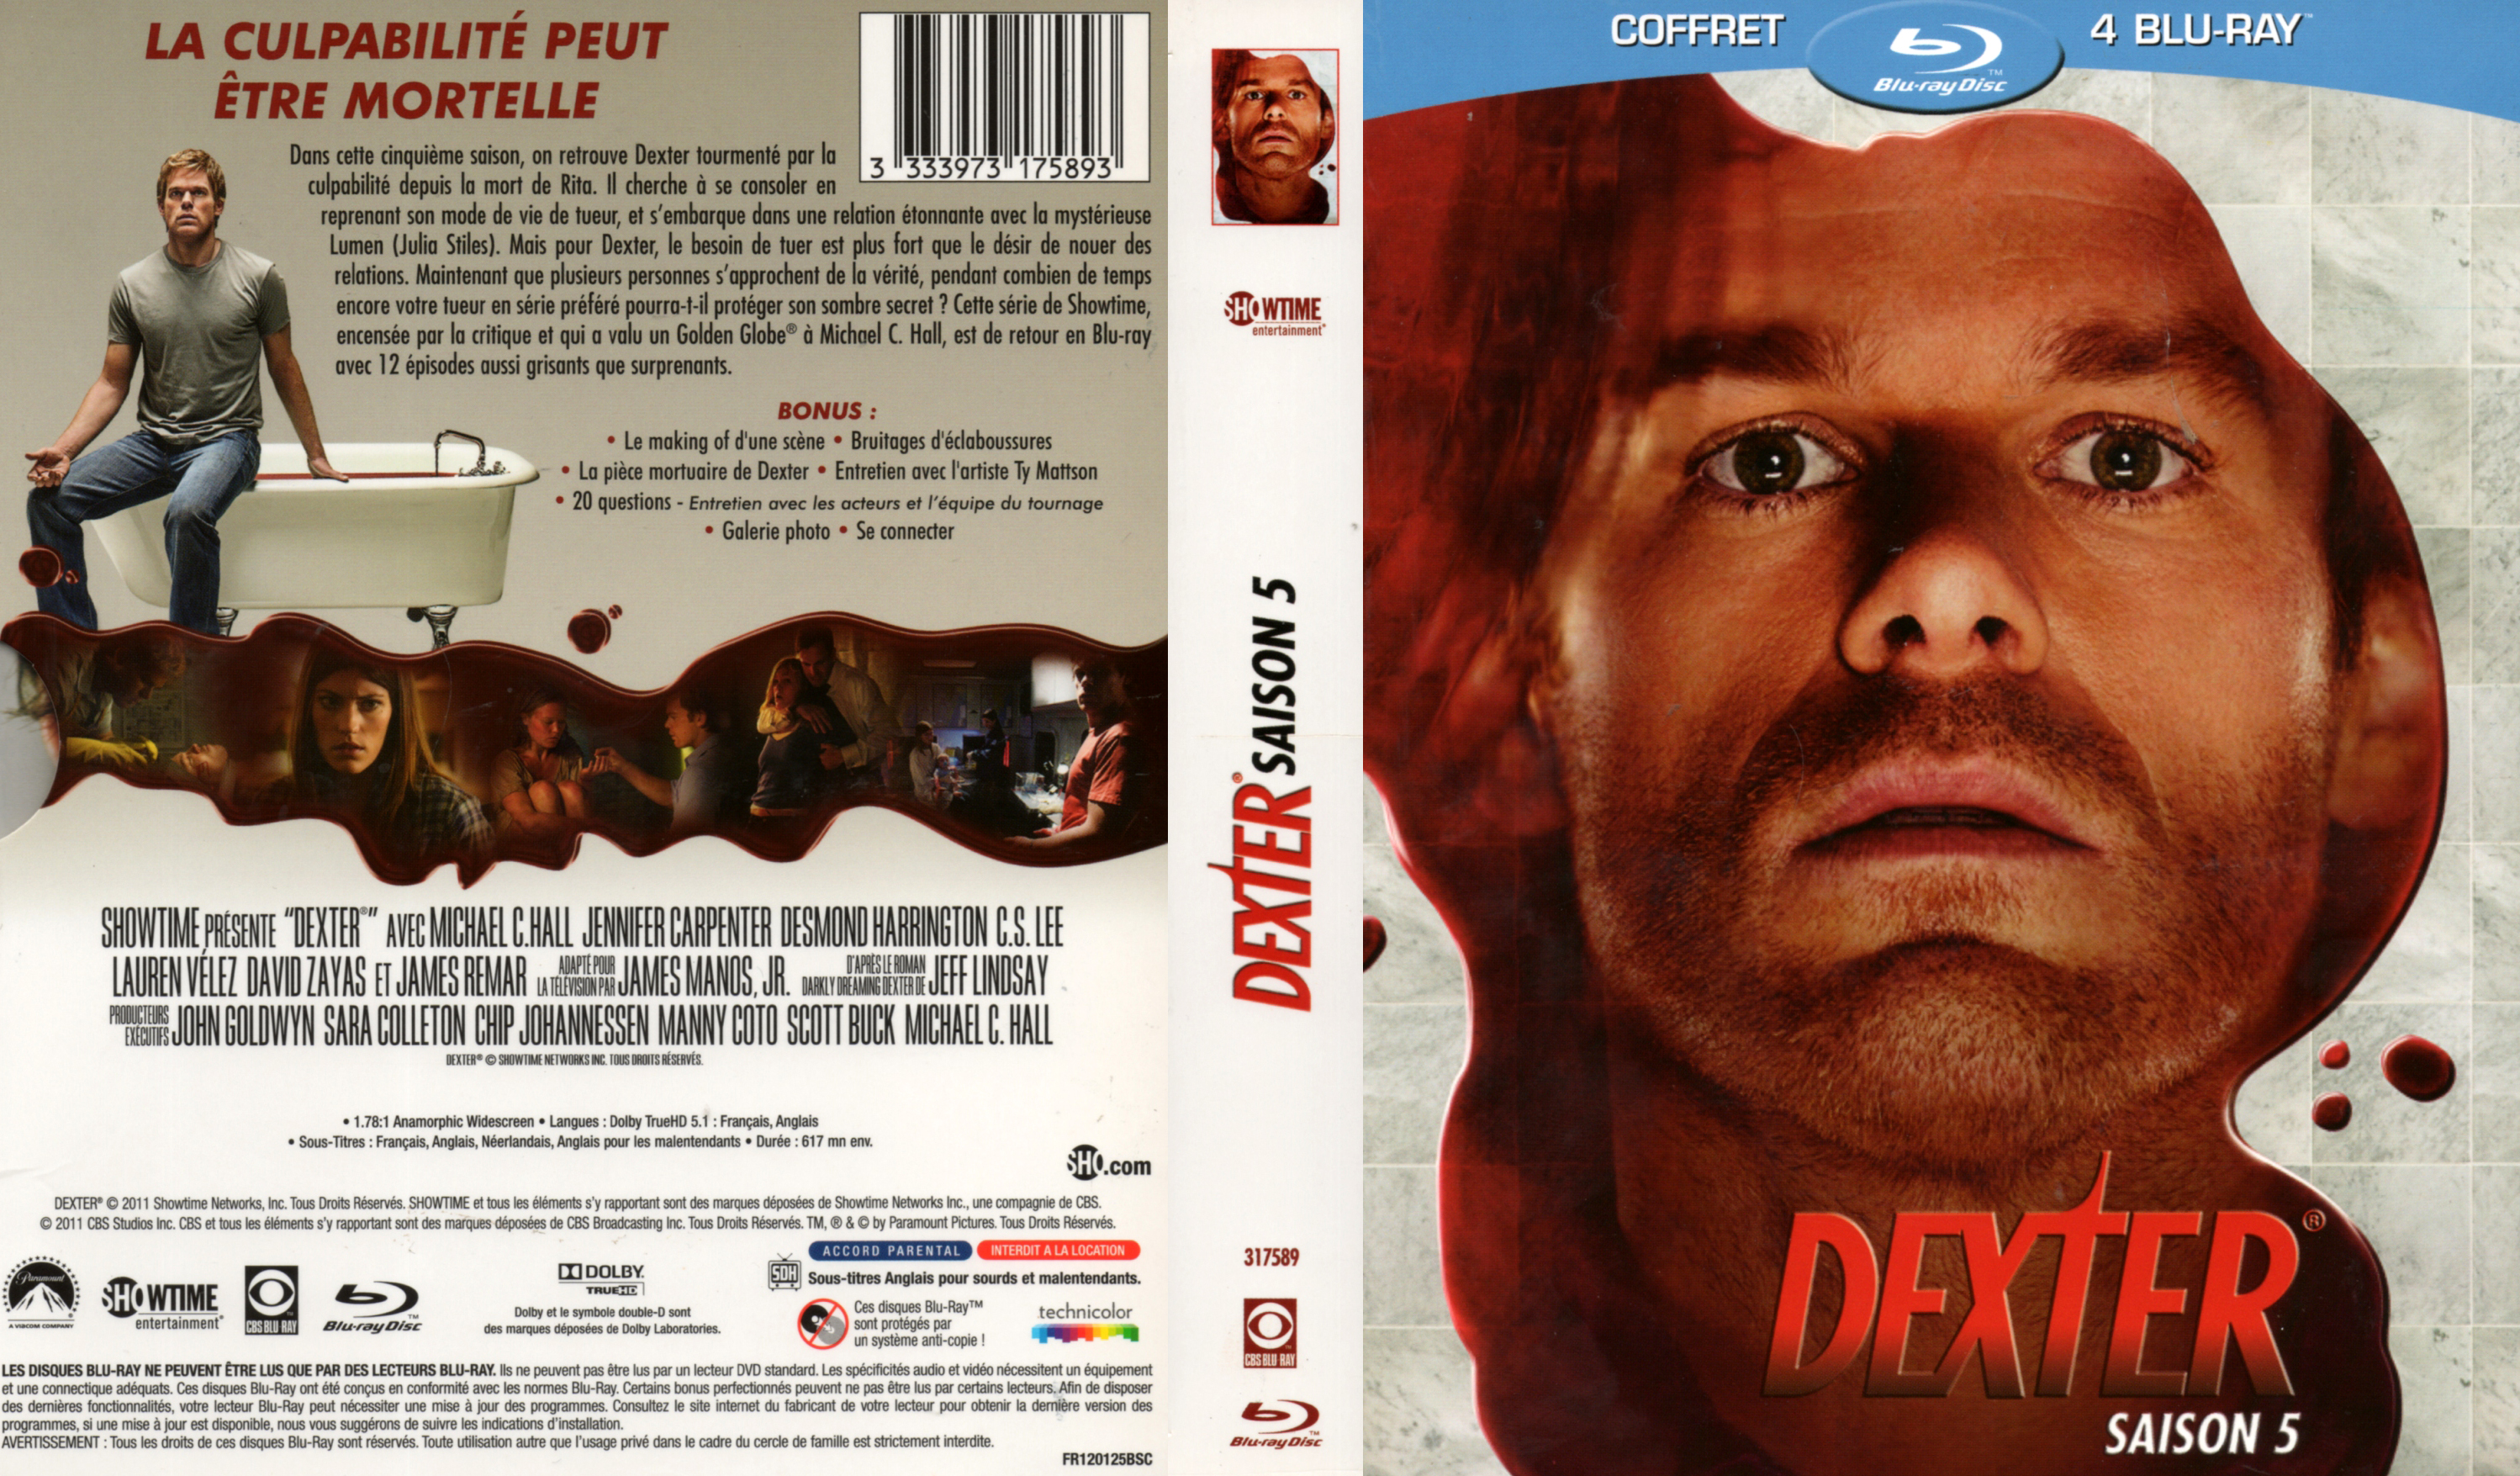 Jaquette DVD Dexter saison 5 COFFRET (BLU-RAY)